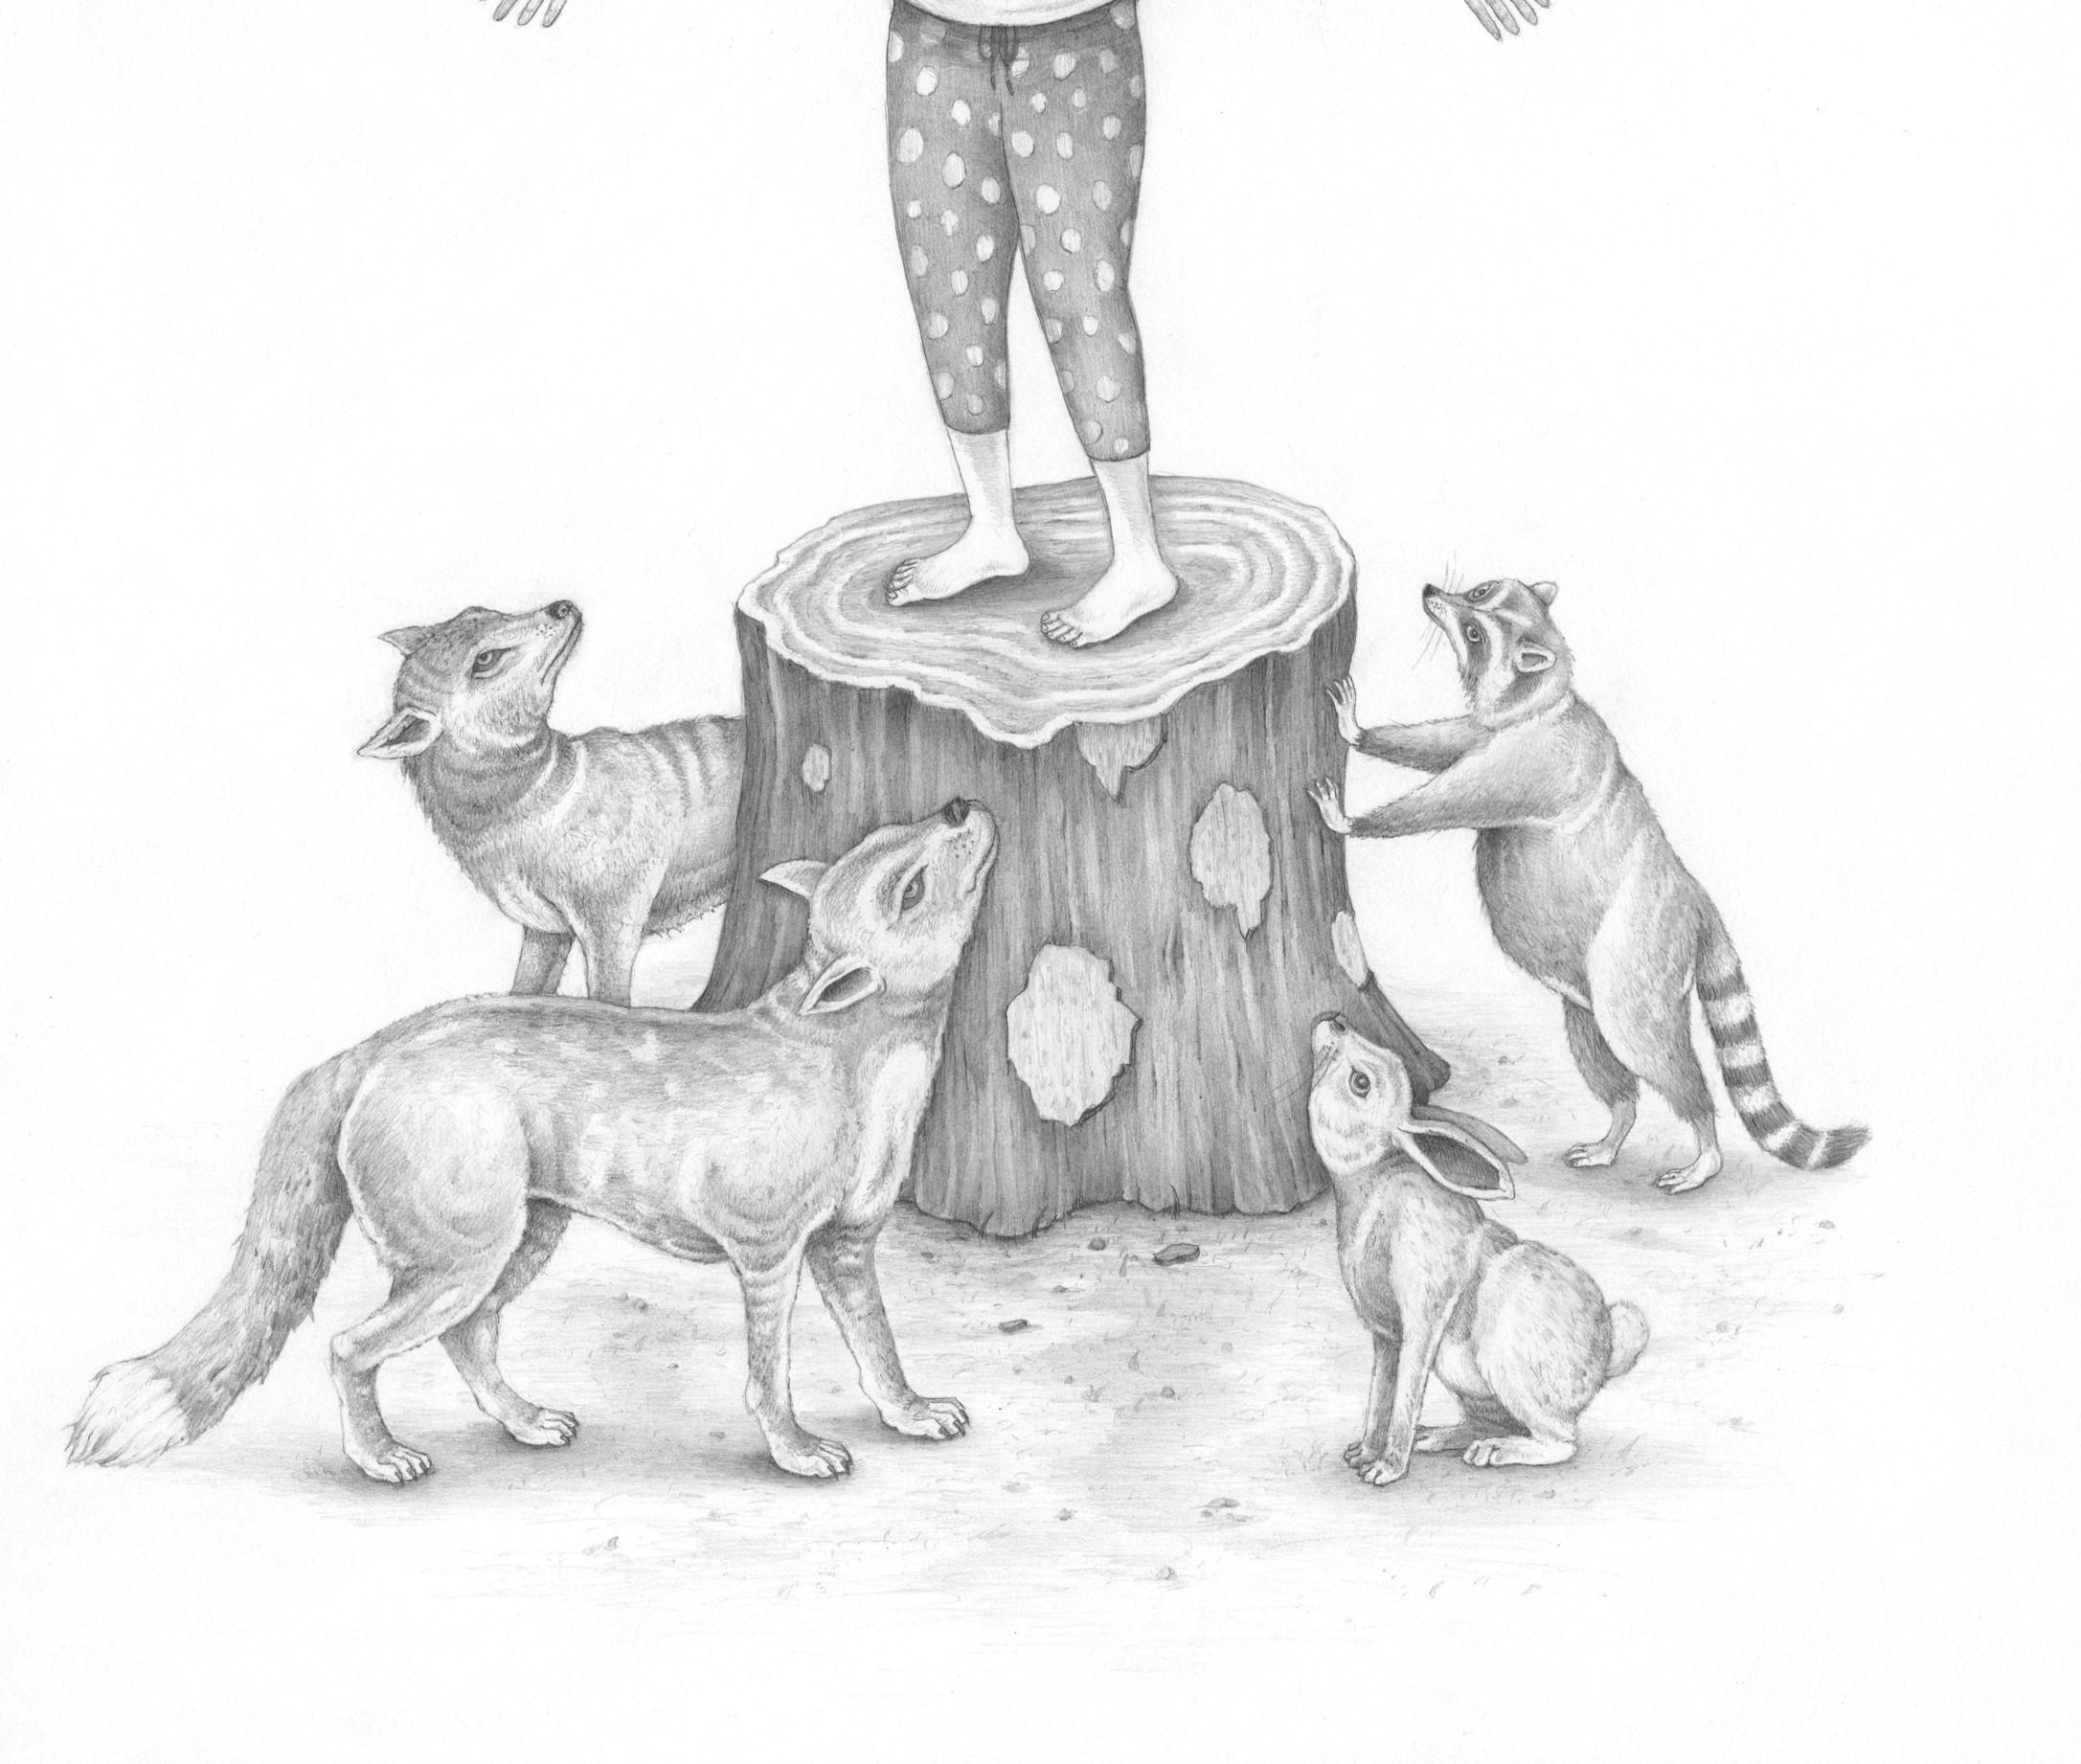 Tales from the Woods ist eine Sammlung von Zeichnungen und Drucken von Mark Hosford, die sich mit der Interaktion des Menschen mit der Natur und seinen einzigartigen Beziehungen zur Natur befassen. Mark Hosford hat einen BFA in Studio Arts von der